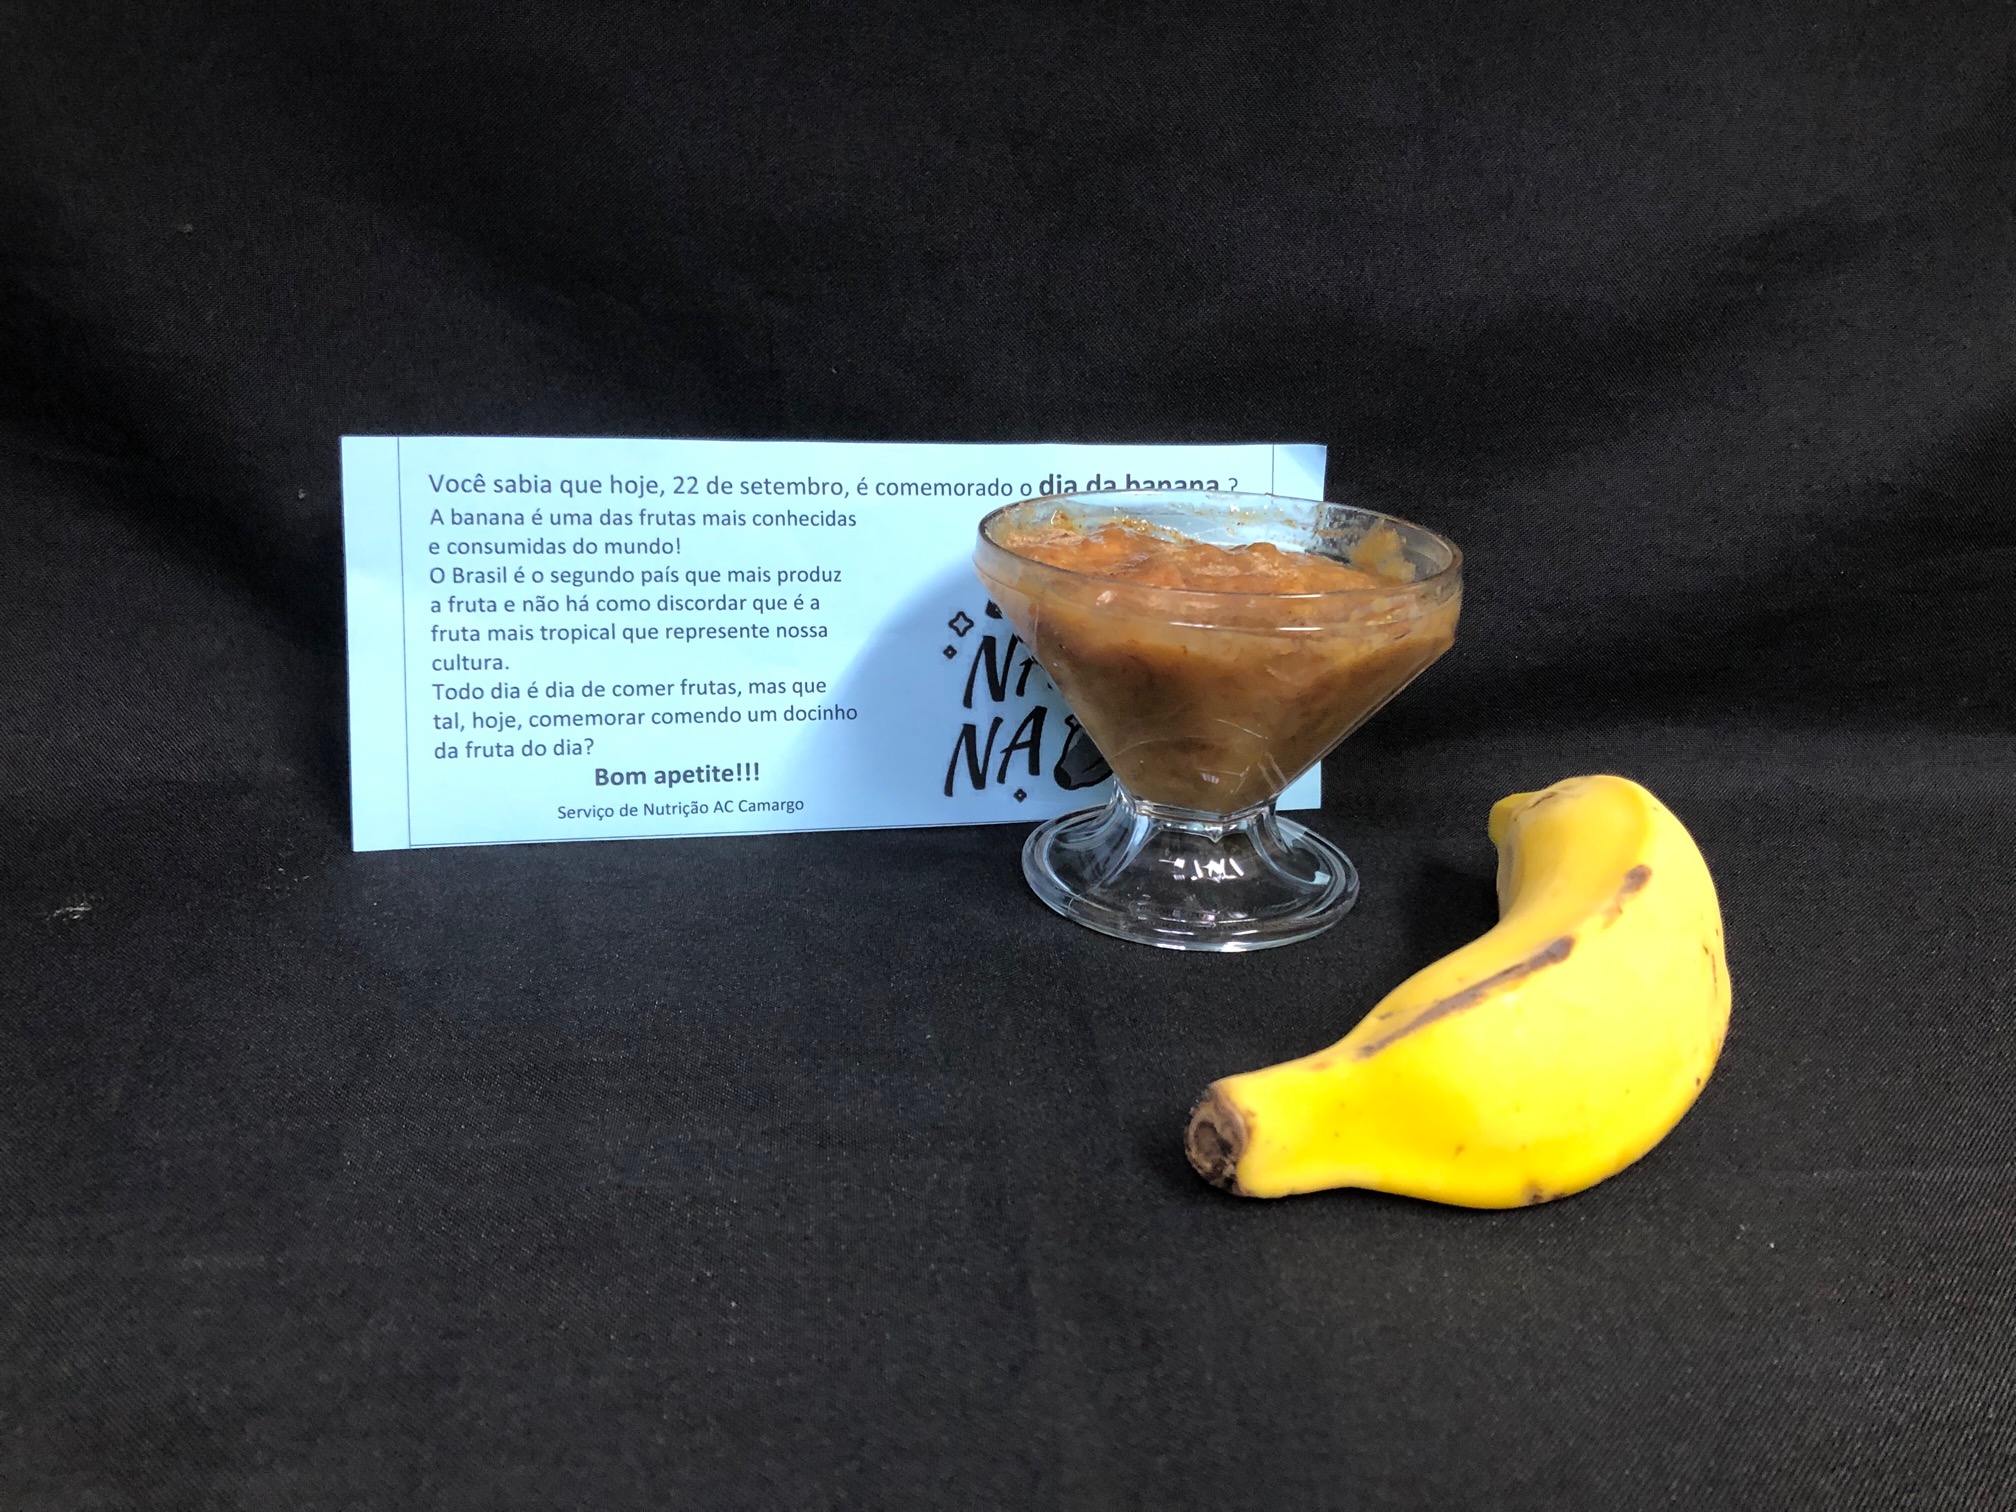 taça de vidro transparente com o doce de banana, pastoso e marrom; ao lado, uma banana, comprida e amarela